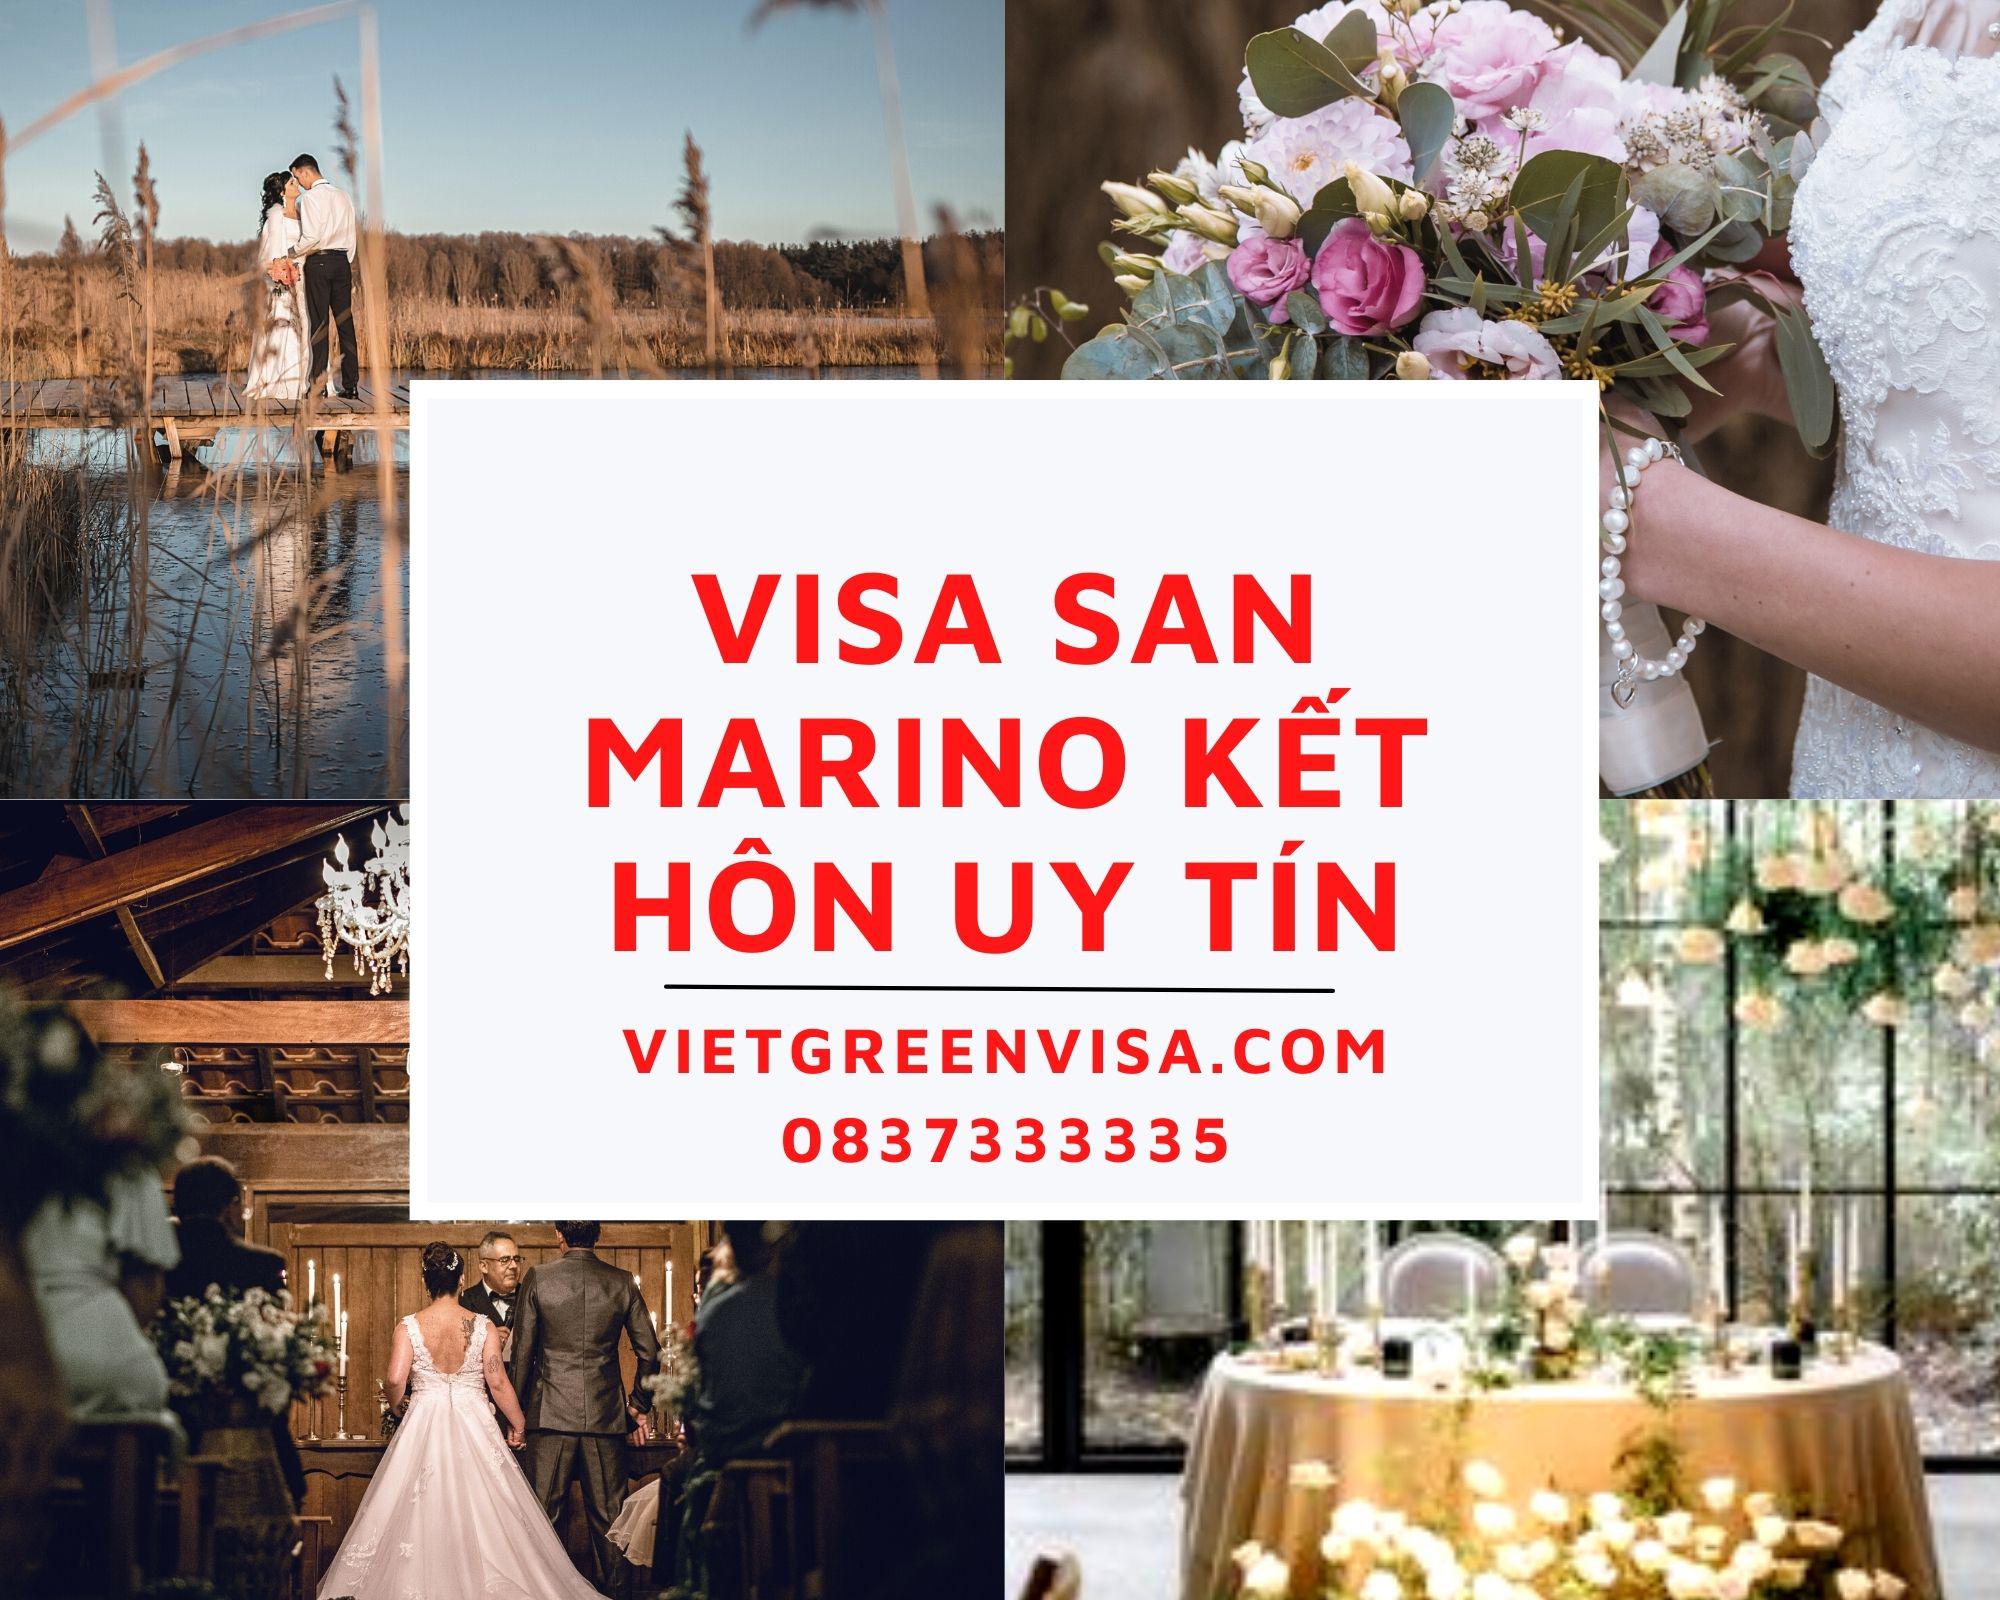 Dịch vụ visa đi San Marino kết hôn nhanh chóng